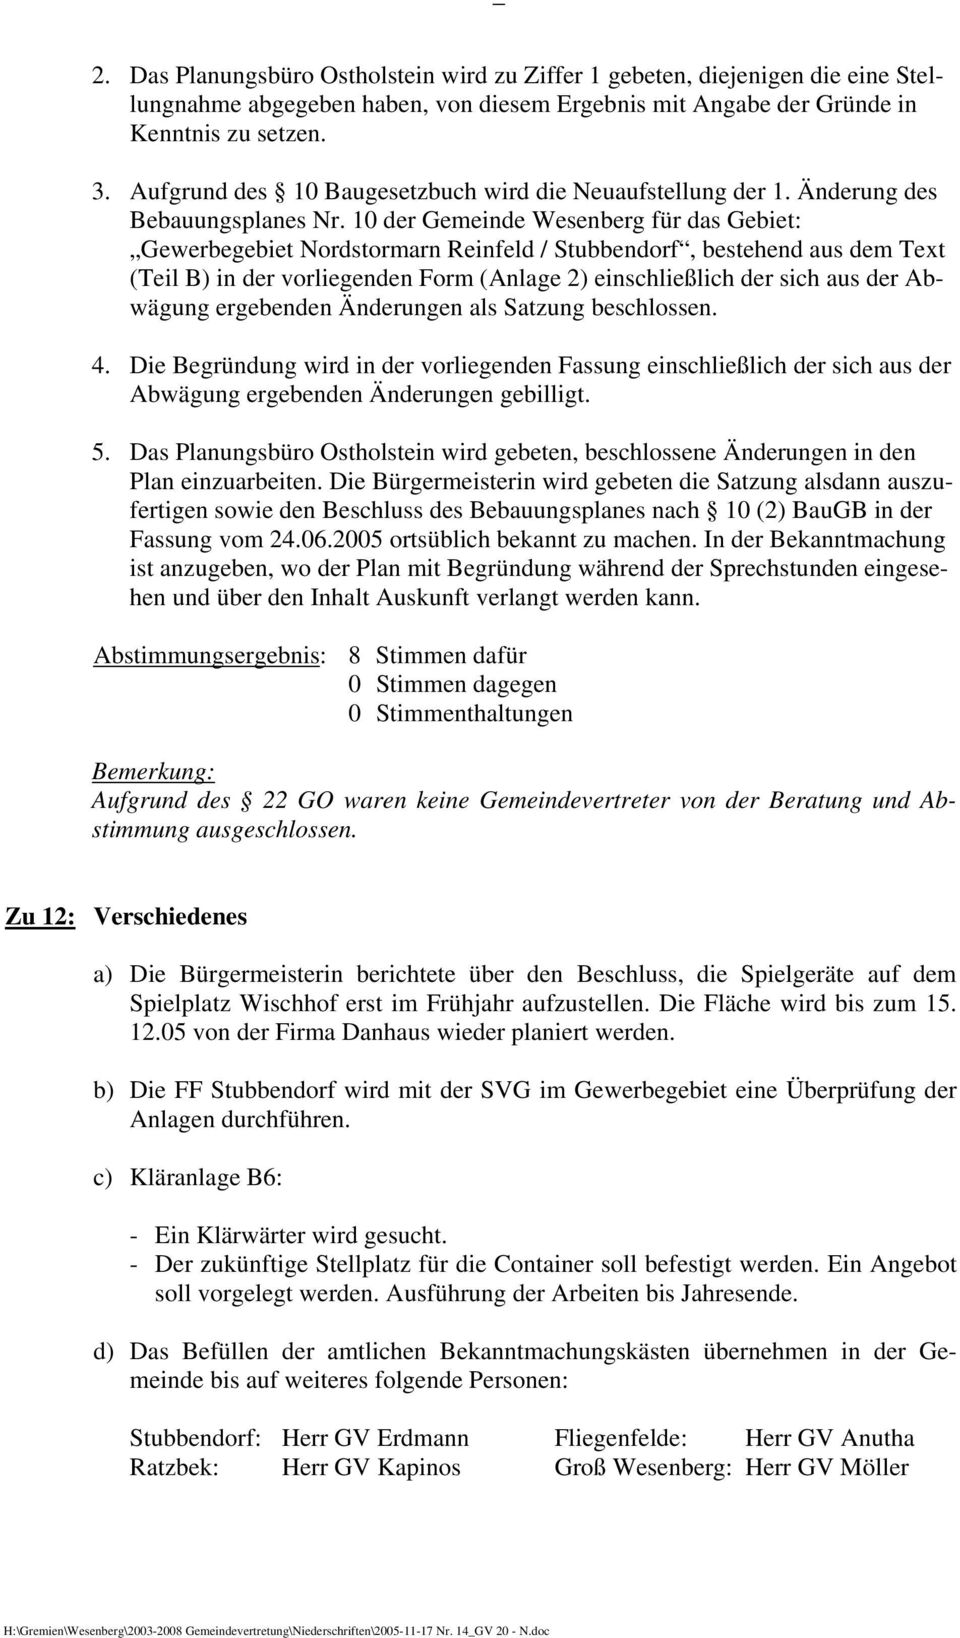 10 der Gemeinde Wesenberg für das Gebiet: Gewerbegebiet Nordstormarn Reinfeld / Stubbendorf, bestehend aus dem Text (Teil B) in der vorliegenden Form (Anlage 2) einschließlich der sich aus der